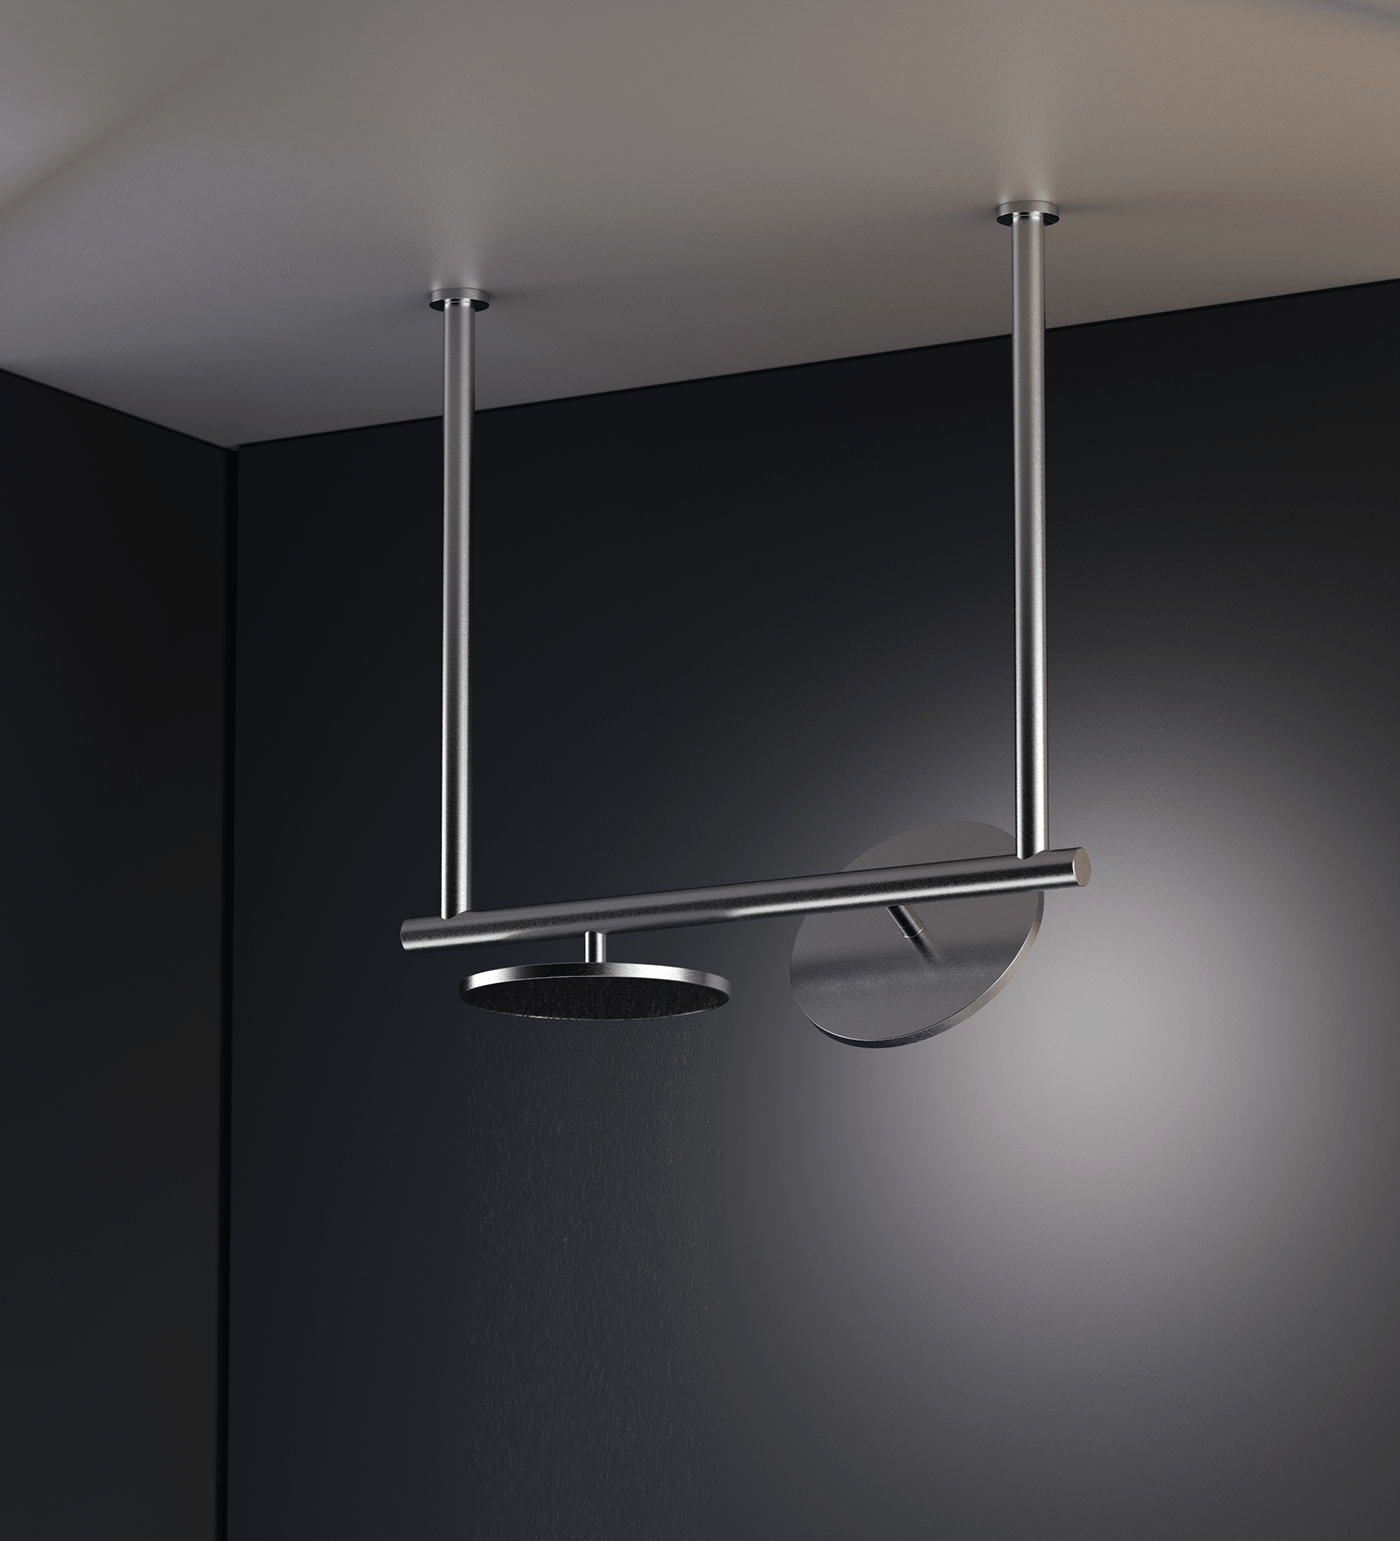 SHOWER Render shower system bathroom design industrial design  product design  keyshot architecture